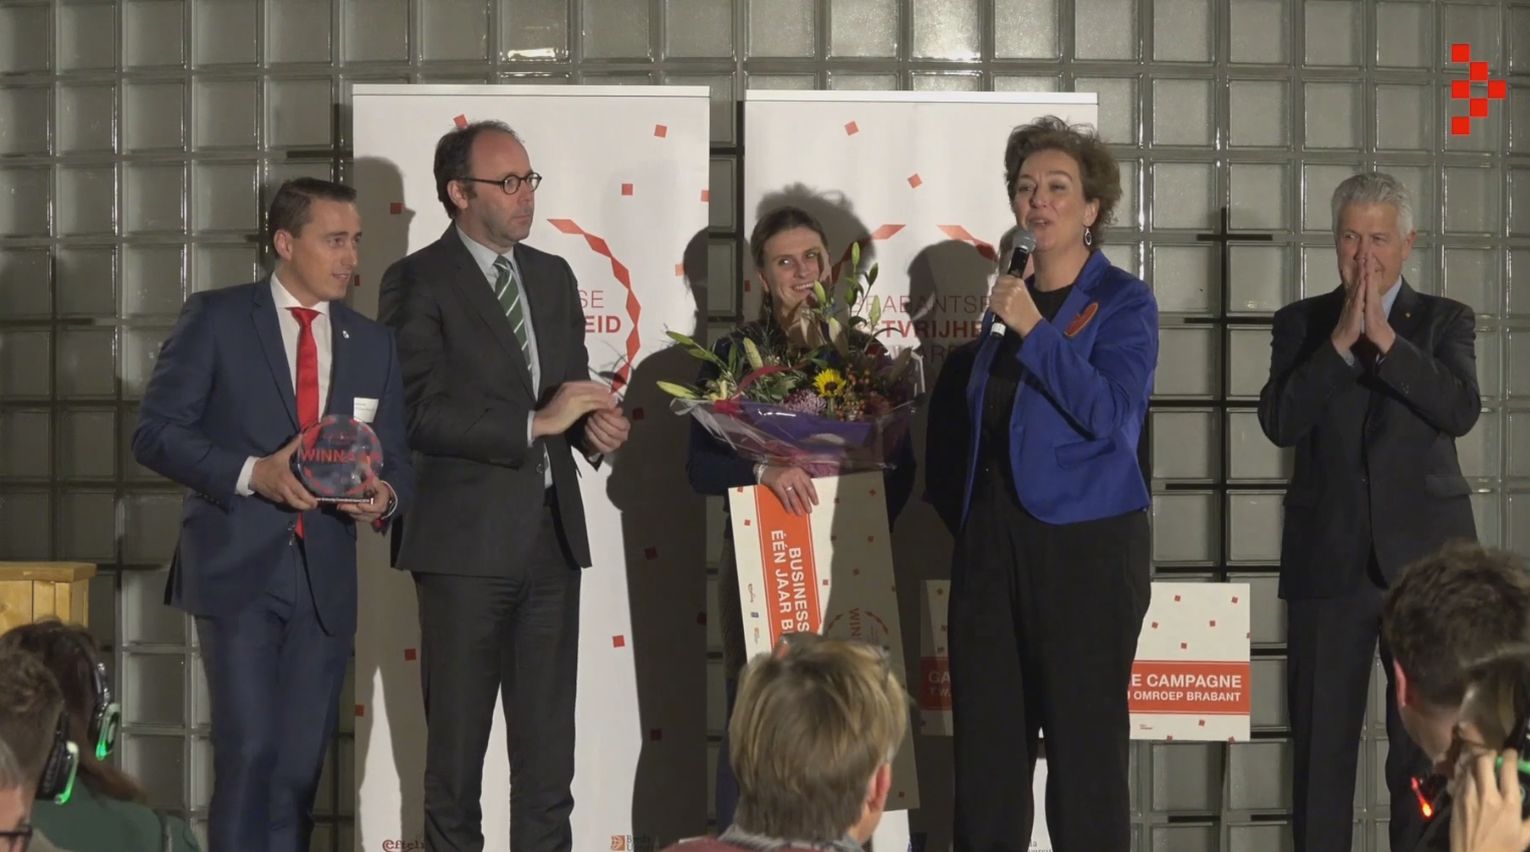 Brabantse gastvrijheid award